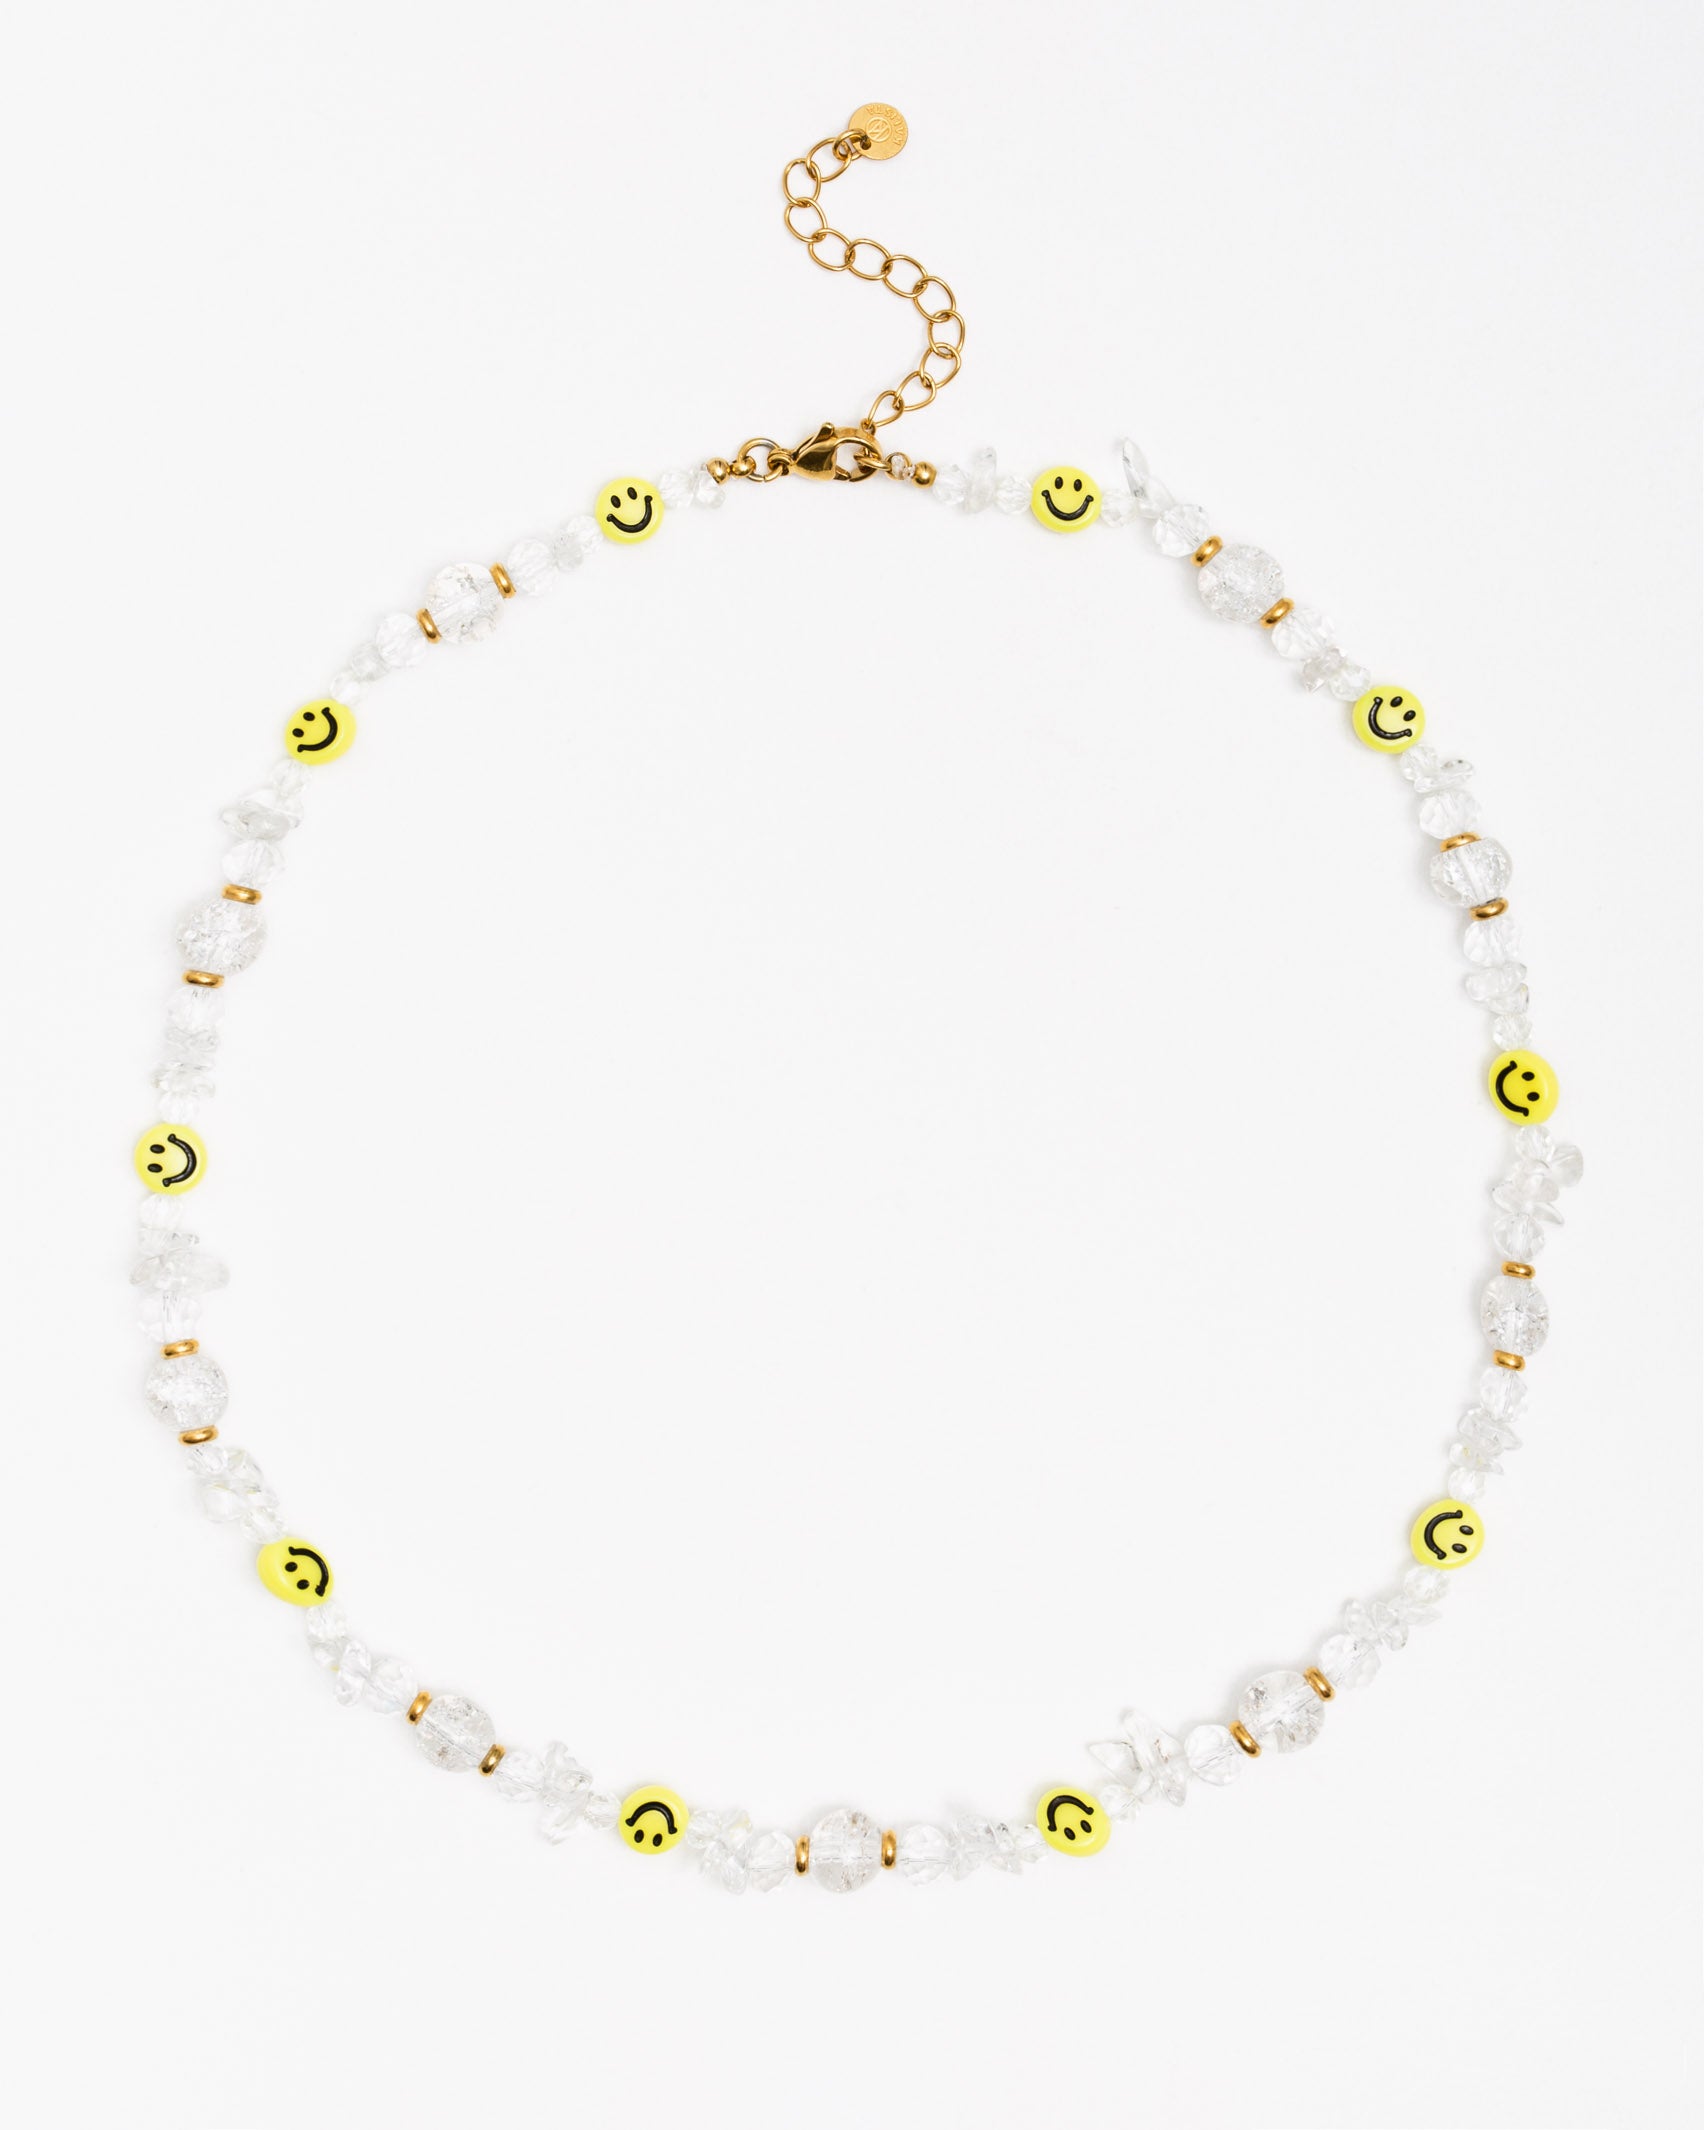 Kristallartige Perlenkette mit lächelnden Smileys - Broke + Schön#farbe_white